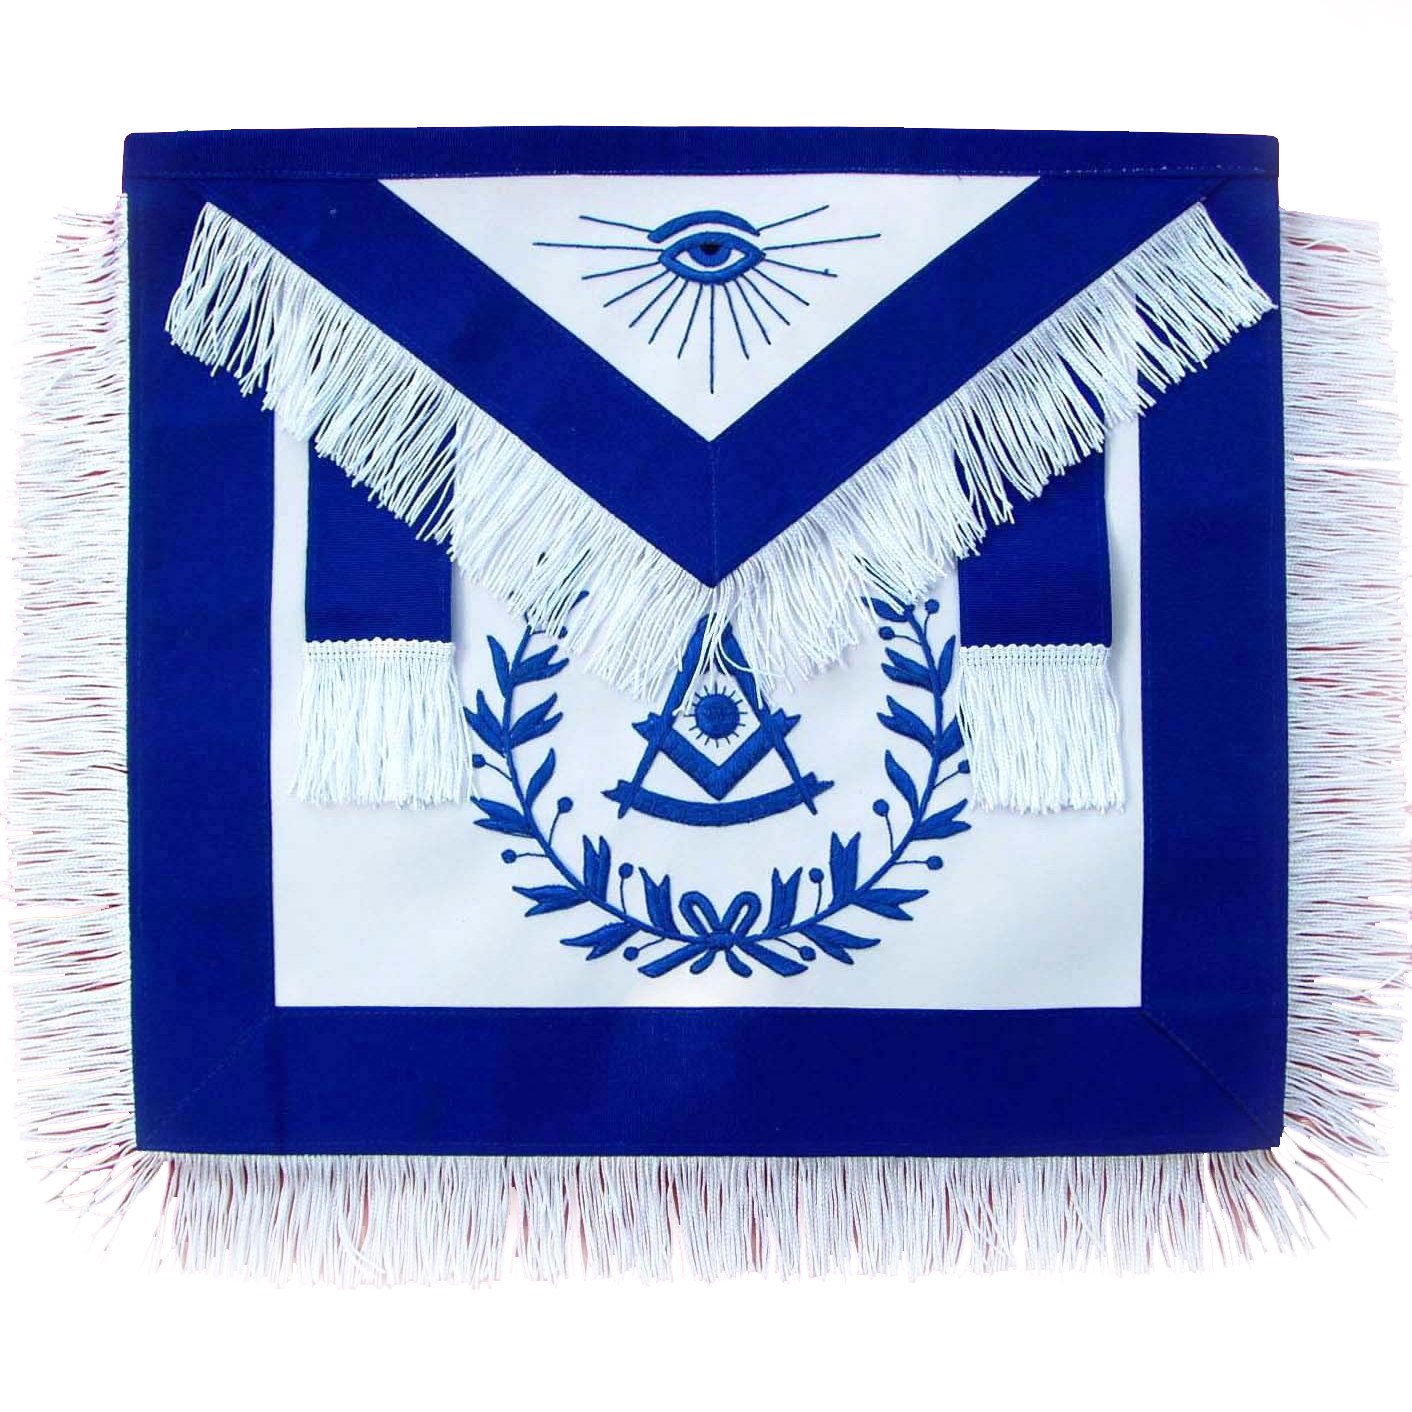 Past Master Blue Lodge Apron - Royal Blue with Wreath & White Fringe Tassels - Bricks Masons